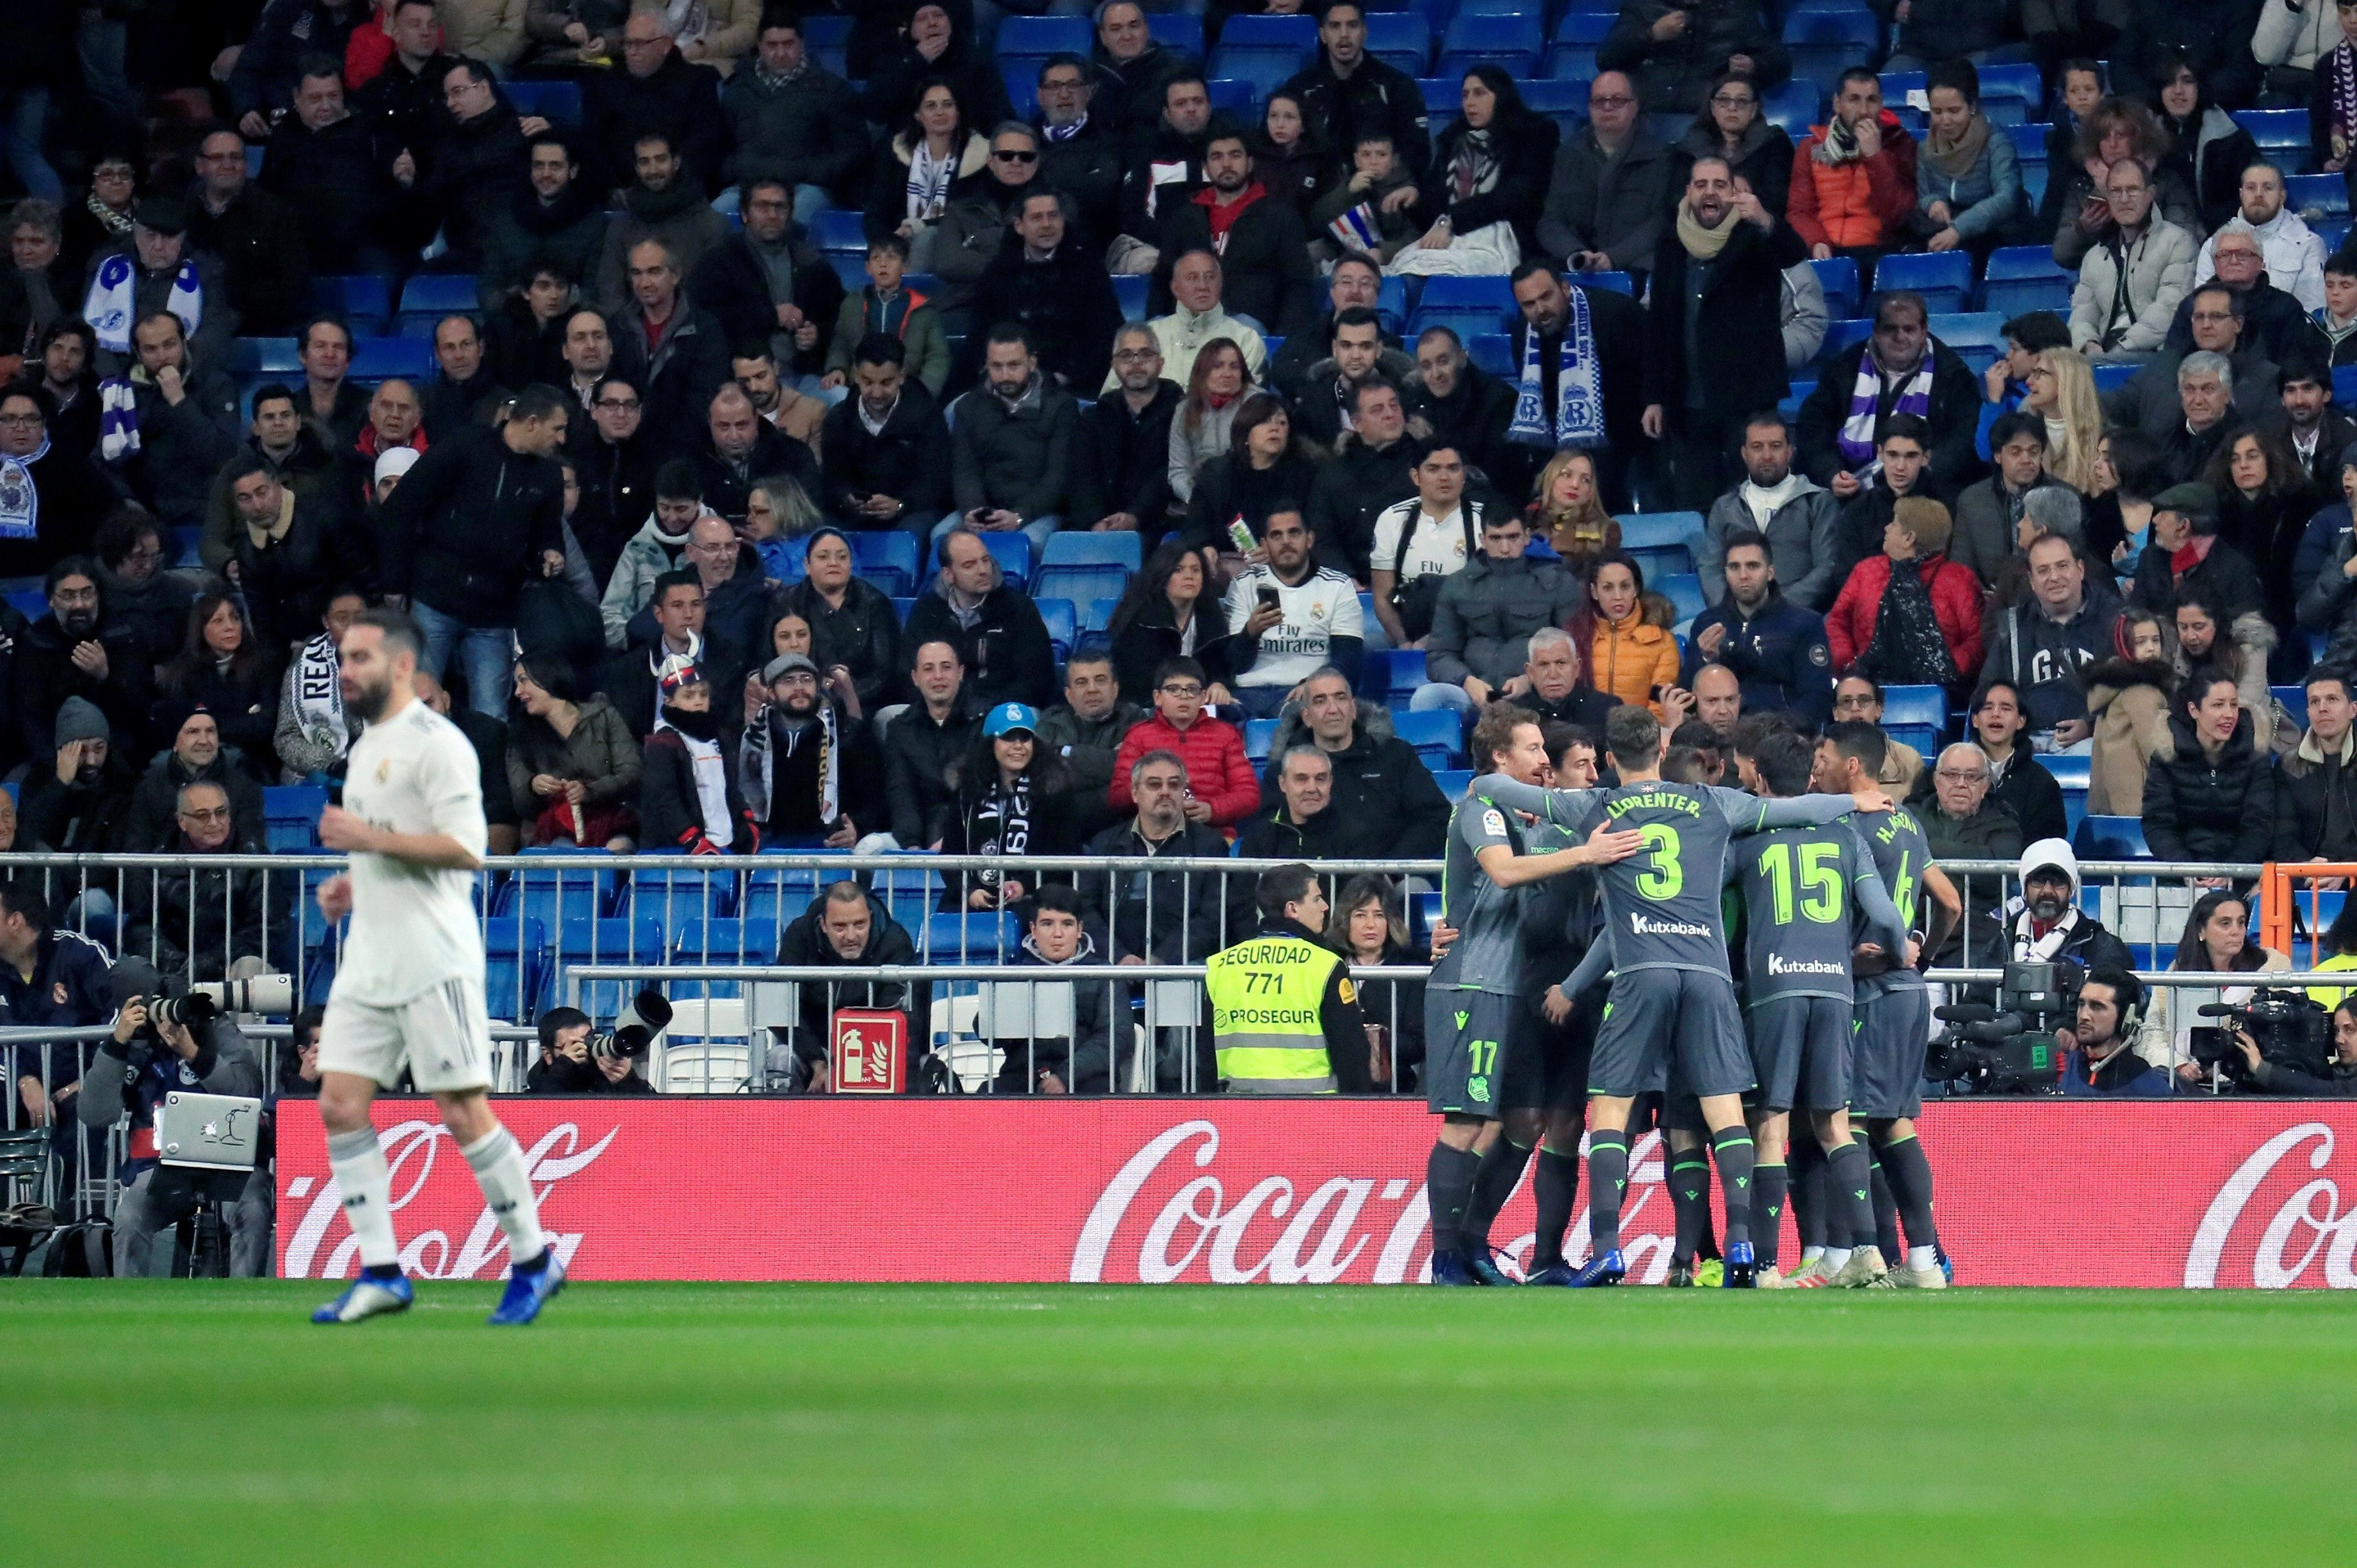 Los jugadores de la Real Sociedad celebran el gol frente al Real Madrid / EFE